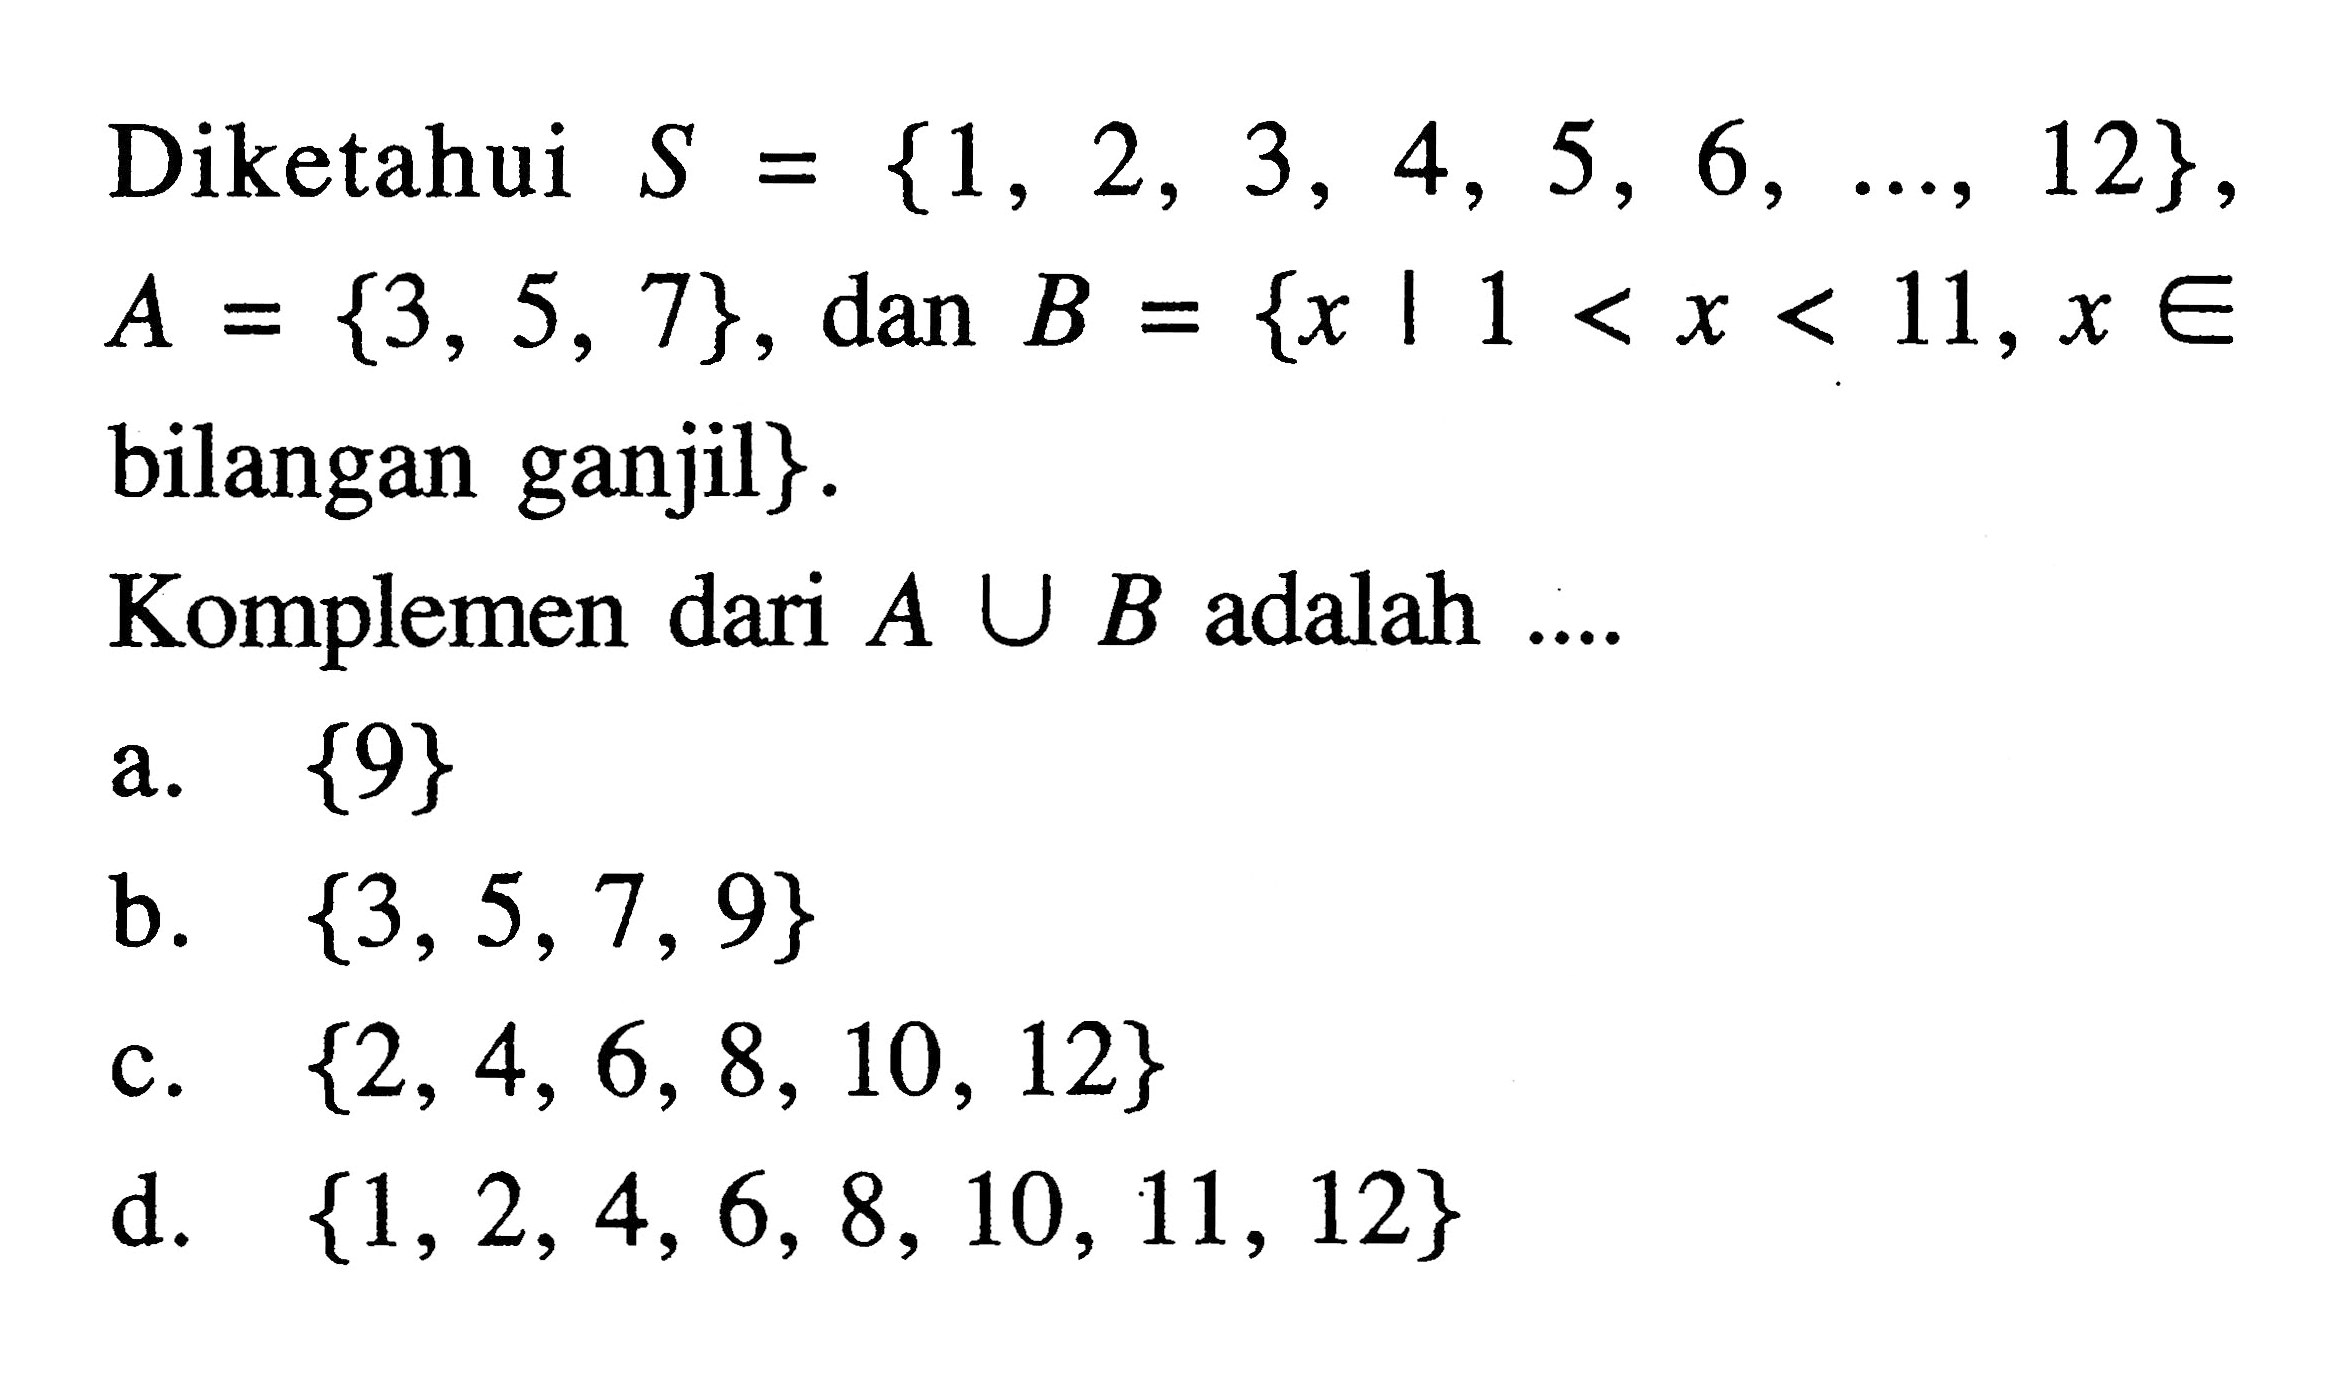 Diketahui S = {1, 2, 3, 4, 5, 6, ..., 12} , A = {3, 5, 7} , dan B = {x | 1 < x < 11, x e bilangan ganjil}. Komplemen dari A U B adalah...